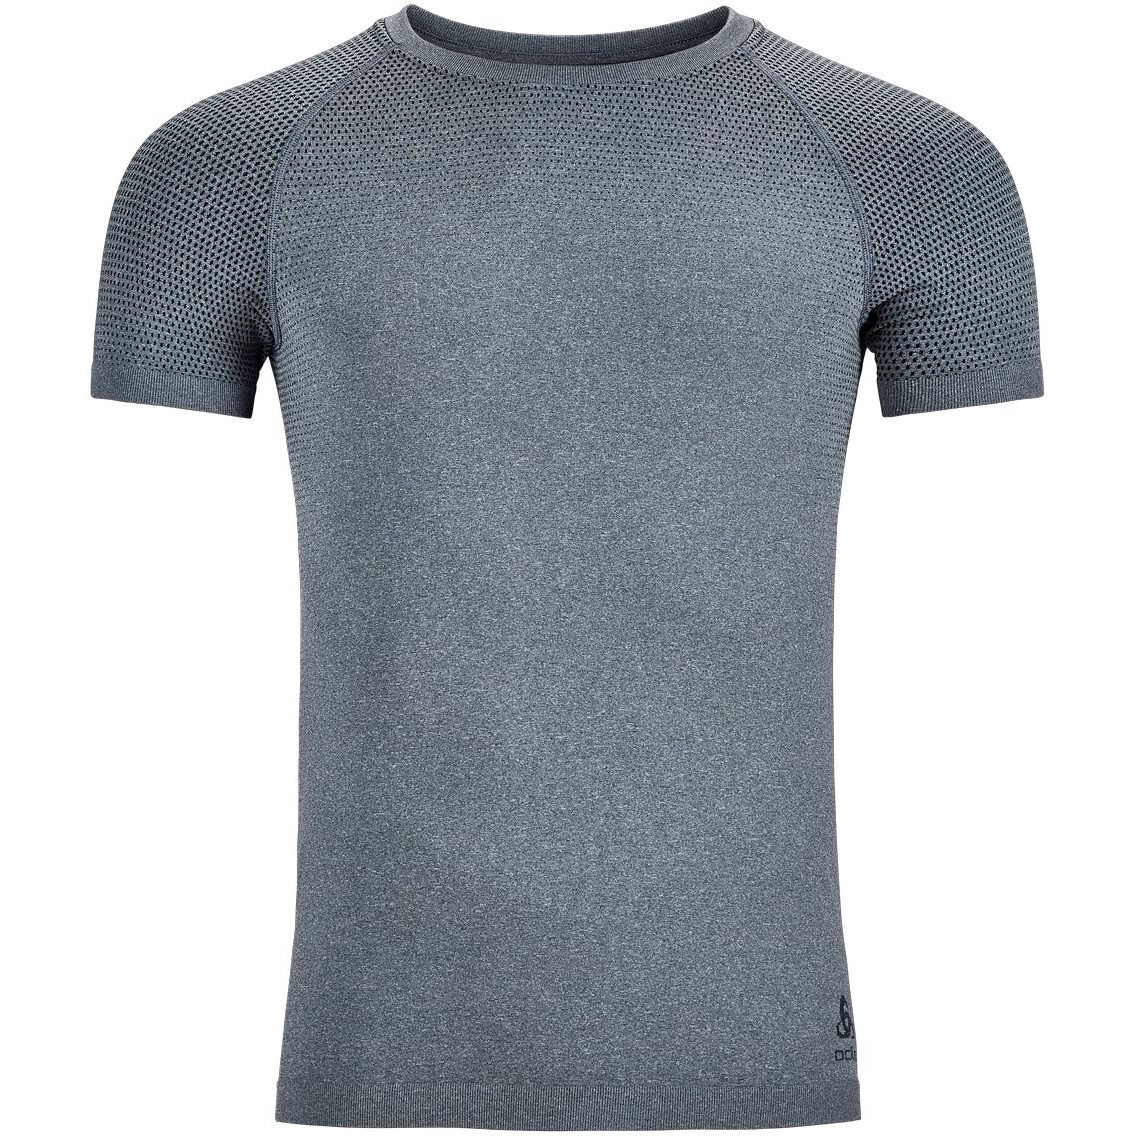 Odlo T-Shirt S/S Crew Neck Essential Seamless - Sport shirt Men's